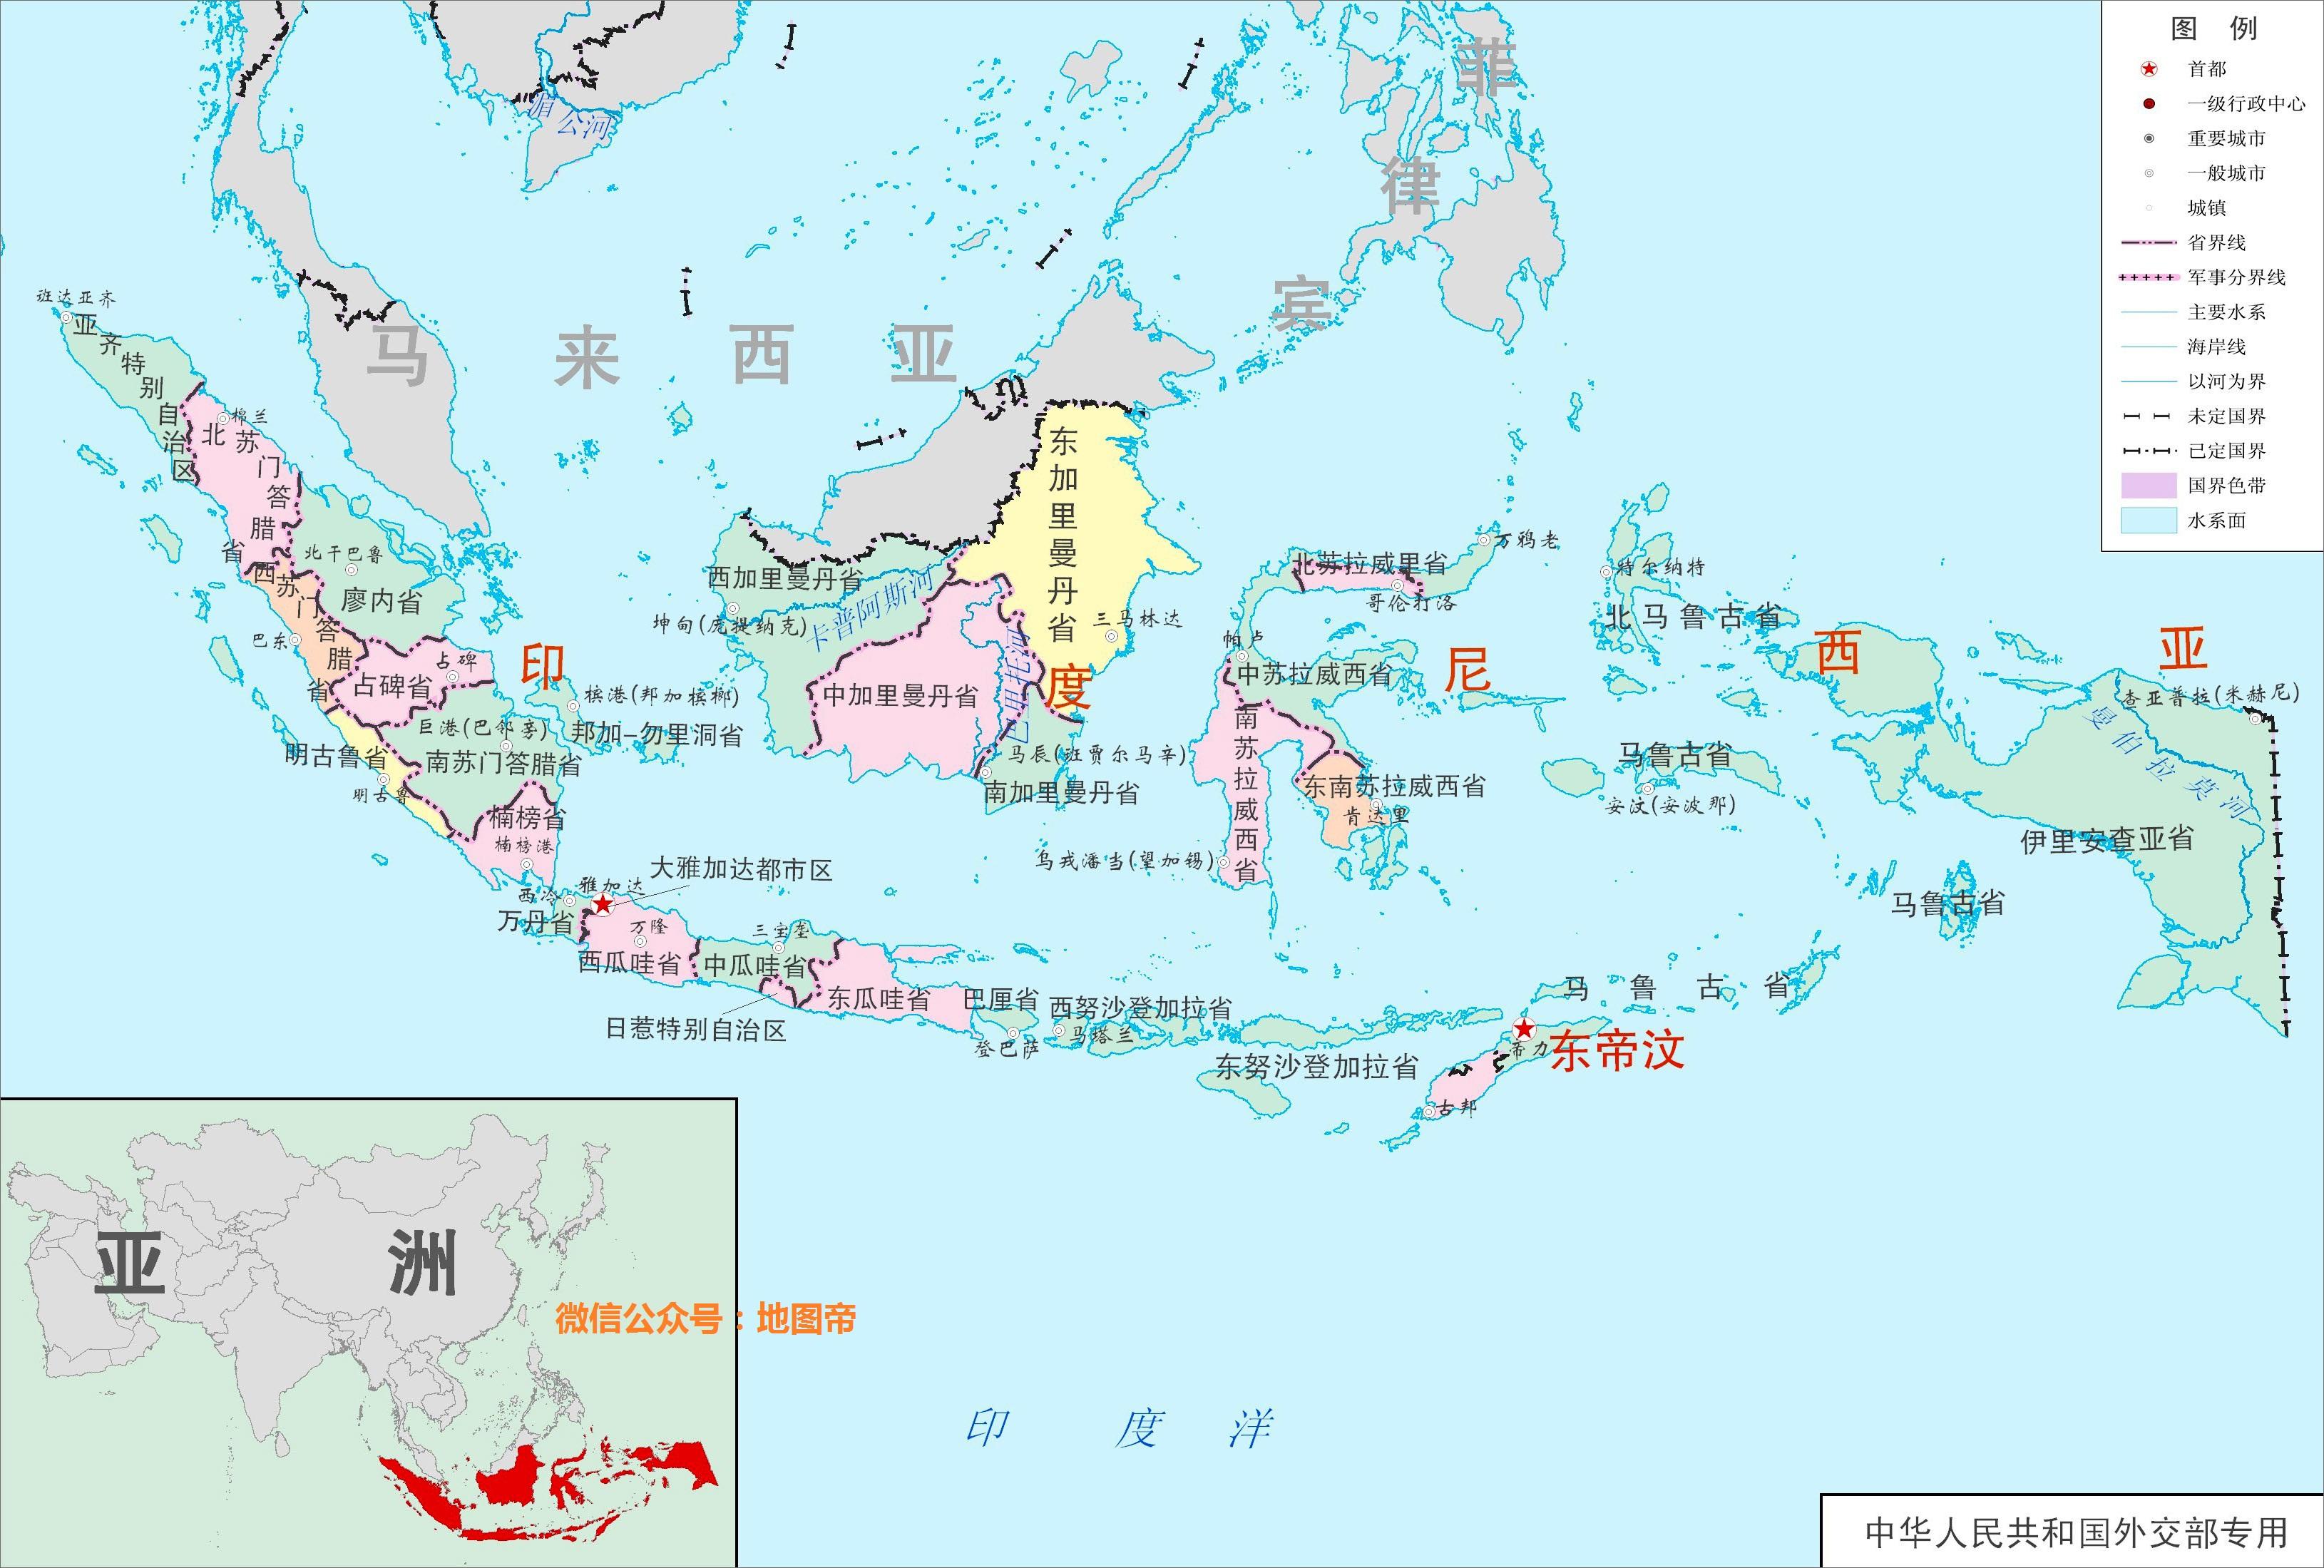 大洋洲有世界第二大岛,形状像恐龙,却有个亚洲国家